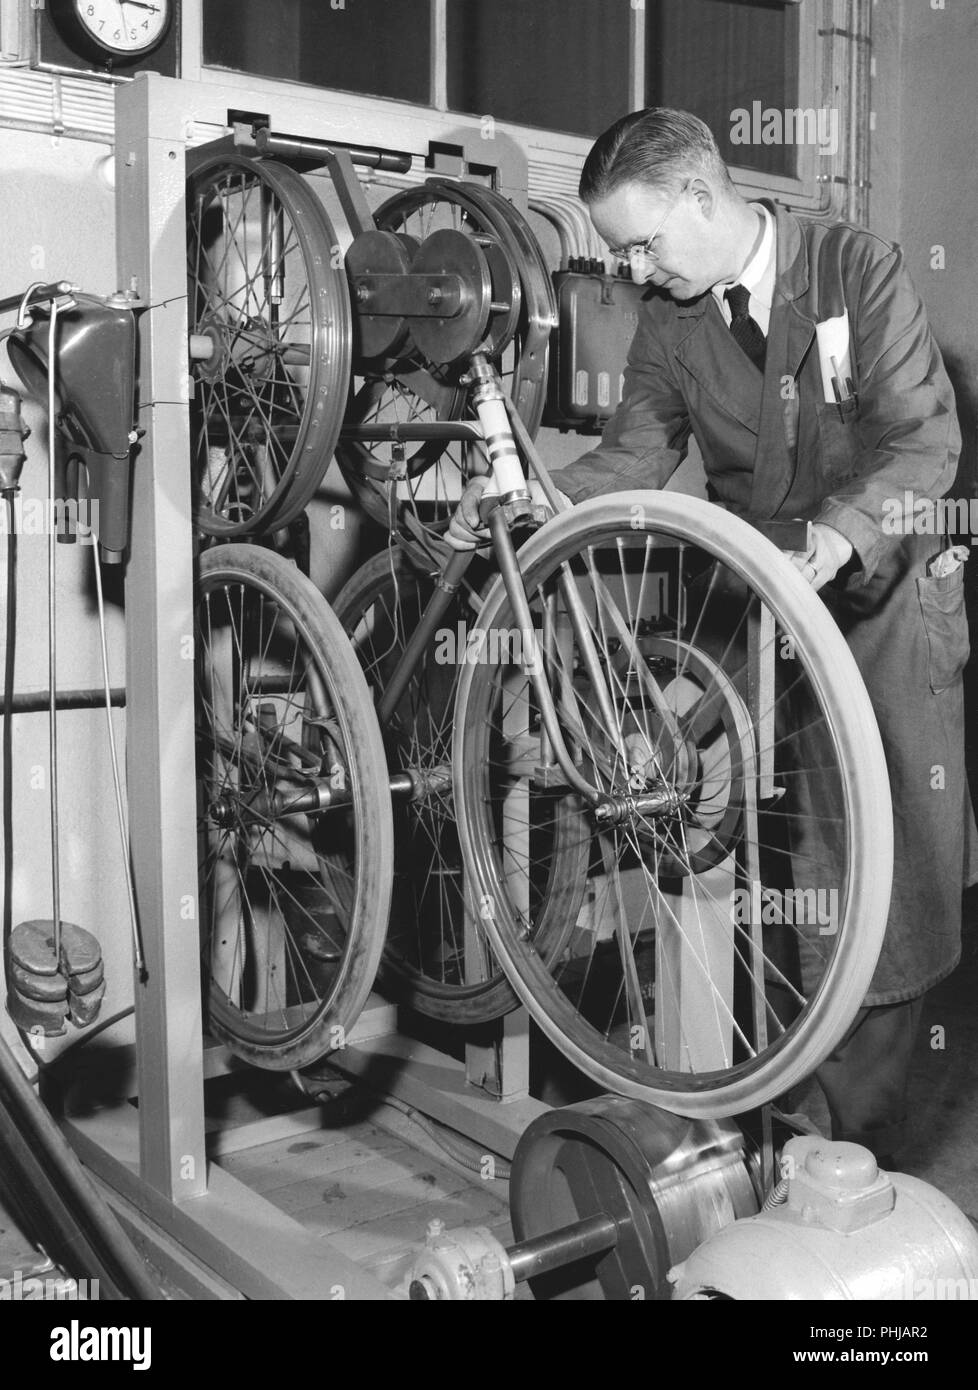 Factory dans les années 1950. Un travailleur de l'entreprise moto et vélo Monark en Suède.Les vélos sont à l'essai et sur cette machine appelée le Shaker, la location court un 1000 km course d'essai. Suède 1958 Banque D'Images